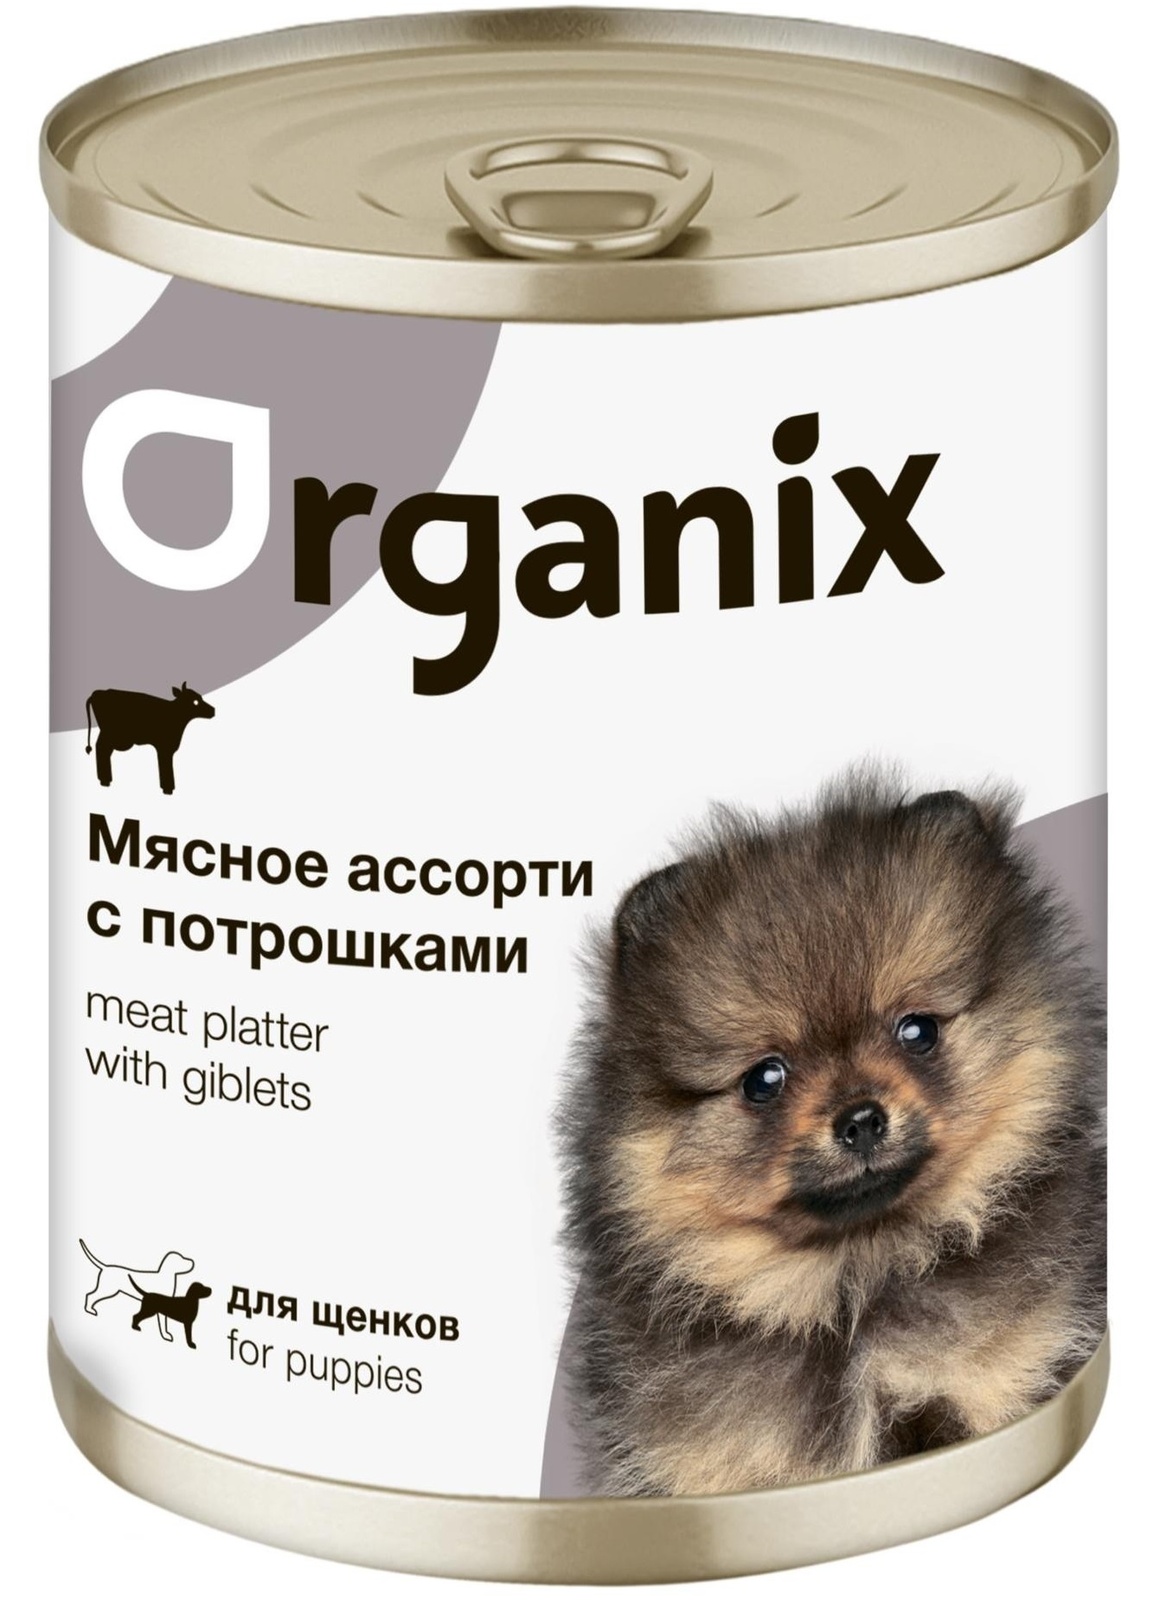 Organix консервы Organix консервы для щенков Мясное ассорти с потрошками (400 г) organix консервы organix монобелковые премиум консервы для собак с кониной 400 г